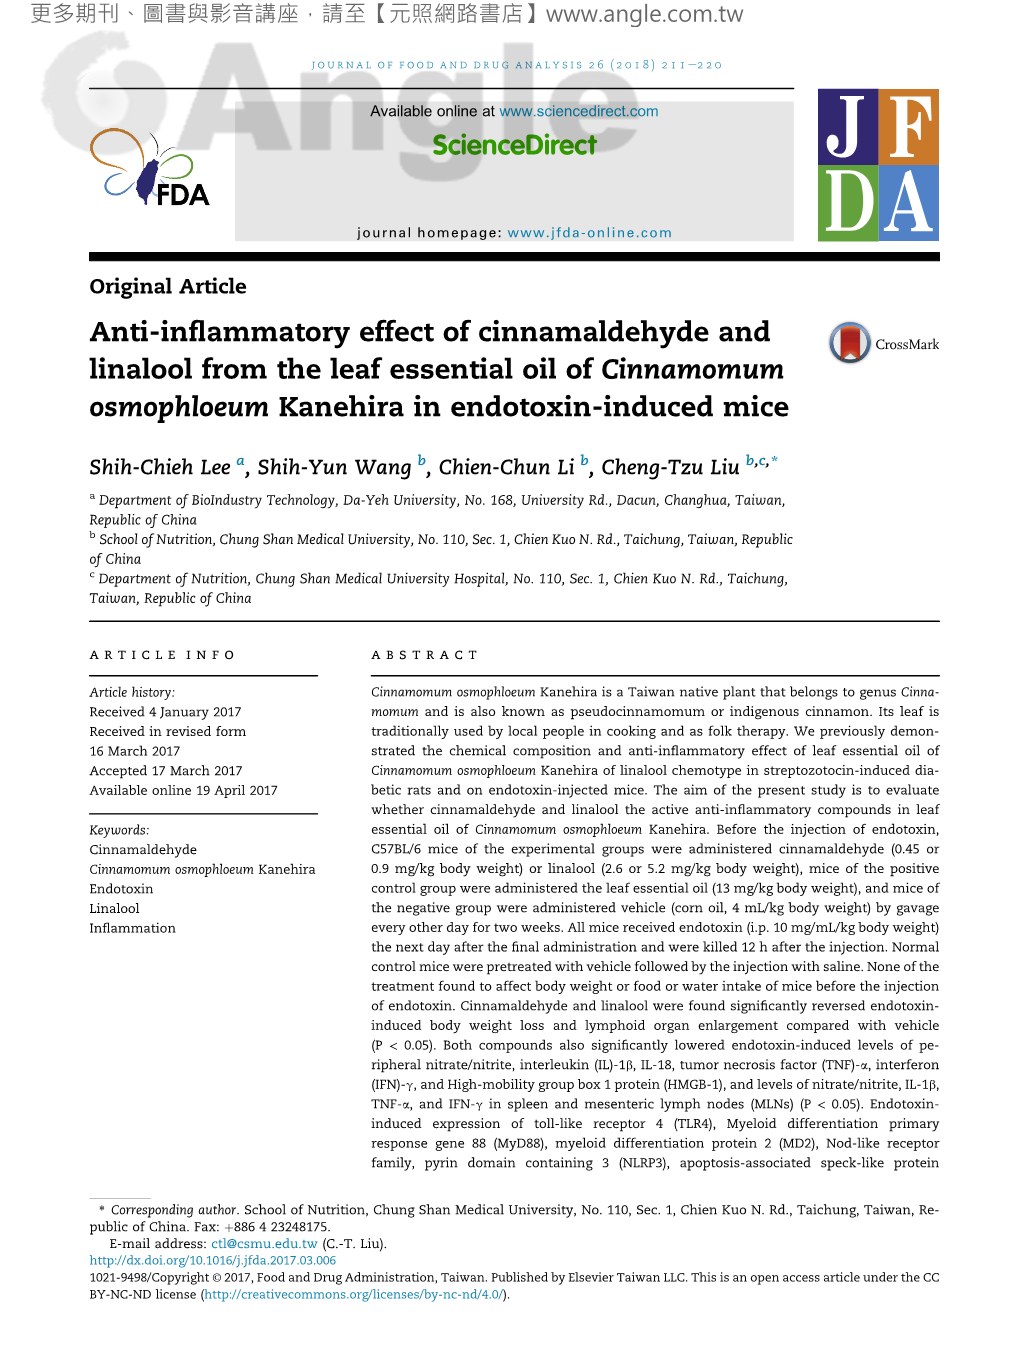 Anti-Inflammatory Effect of Cinnamaldehyde and Linalool From